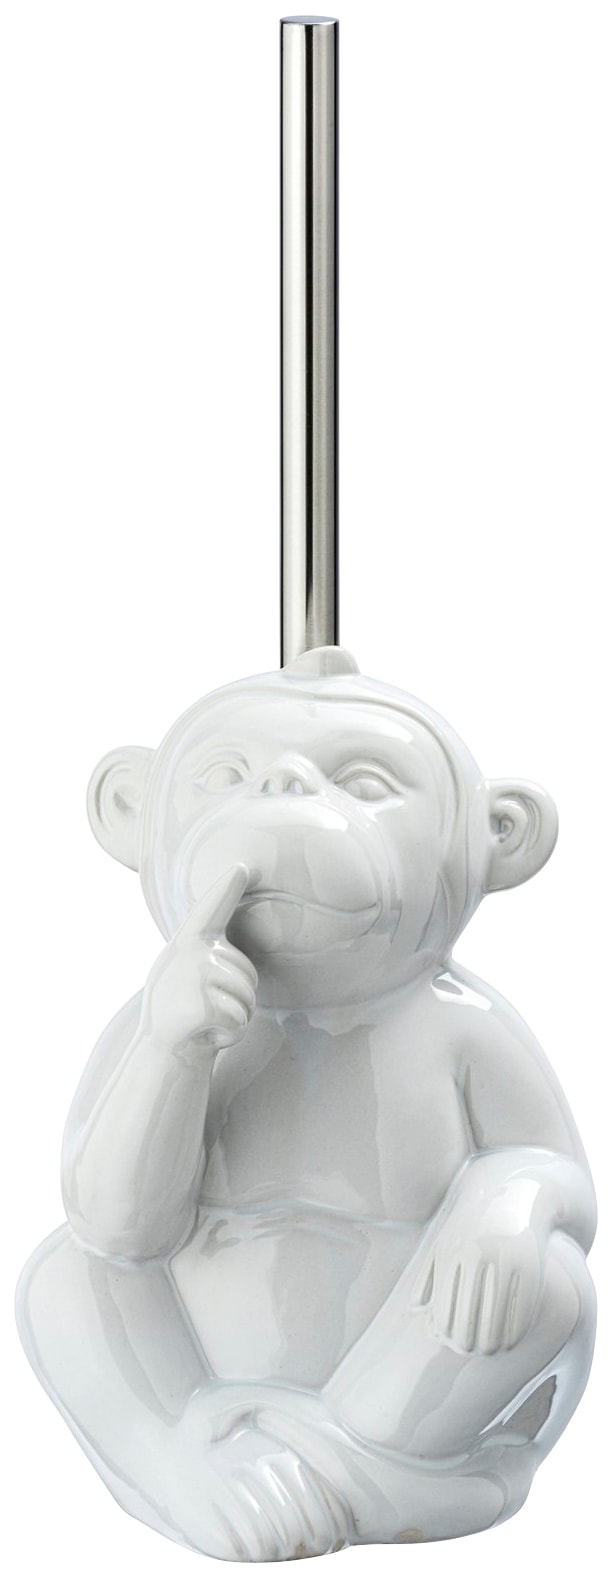 WENKO WC-Garnitur »Monkey«, 1 St., aus Keramik, Keramik kaufen bei OTTO